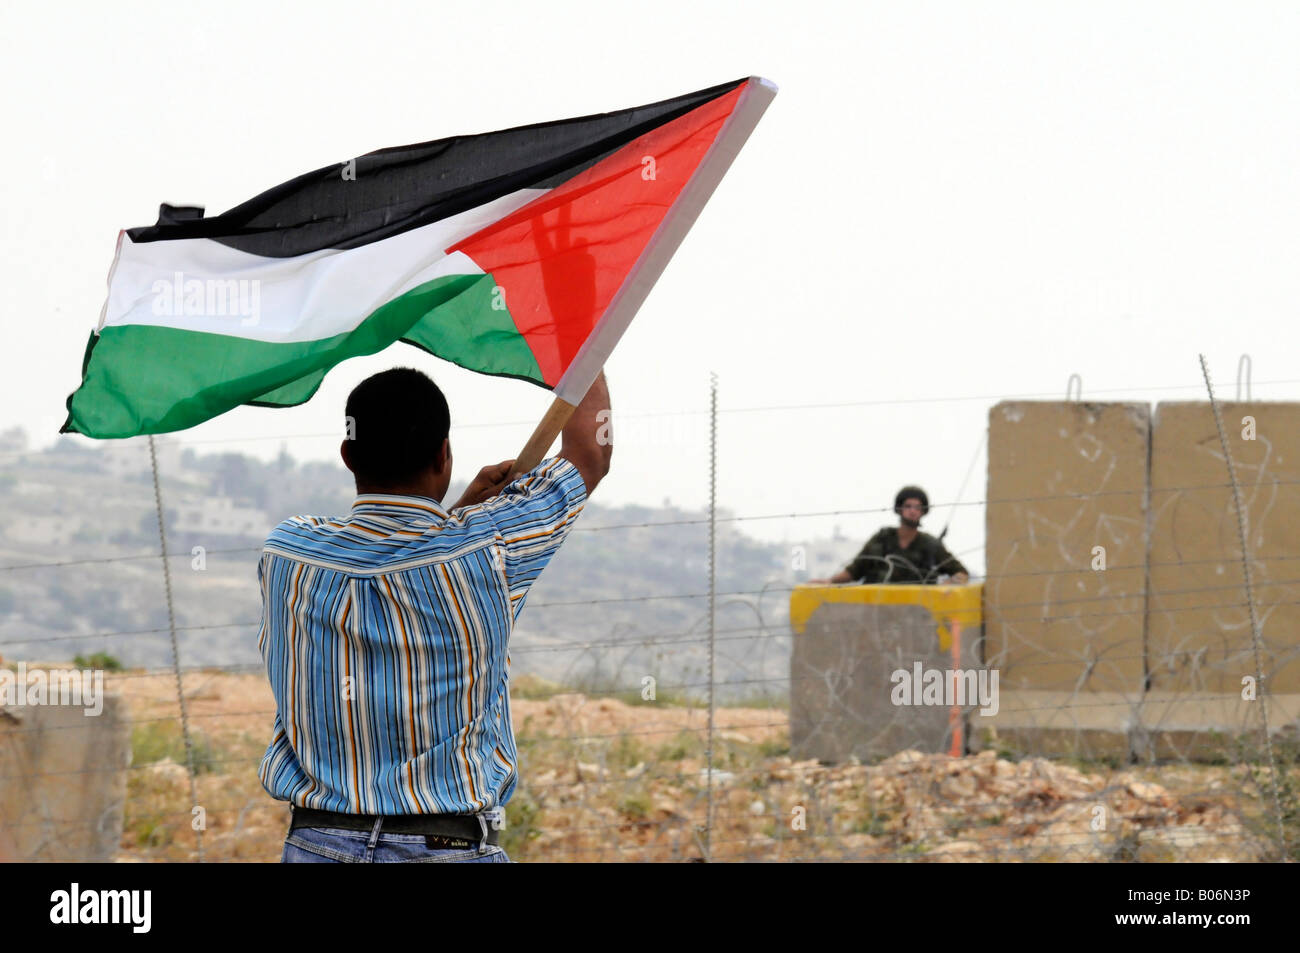 Ein junger Mann während einer Protestaktion gegen die israelische Besatzung in das Dorf von Bilin, Palästina die palästinensische Flagge hissen. Stockfoto